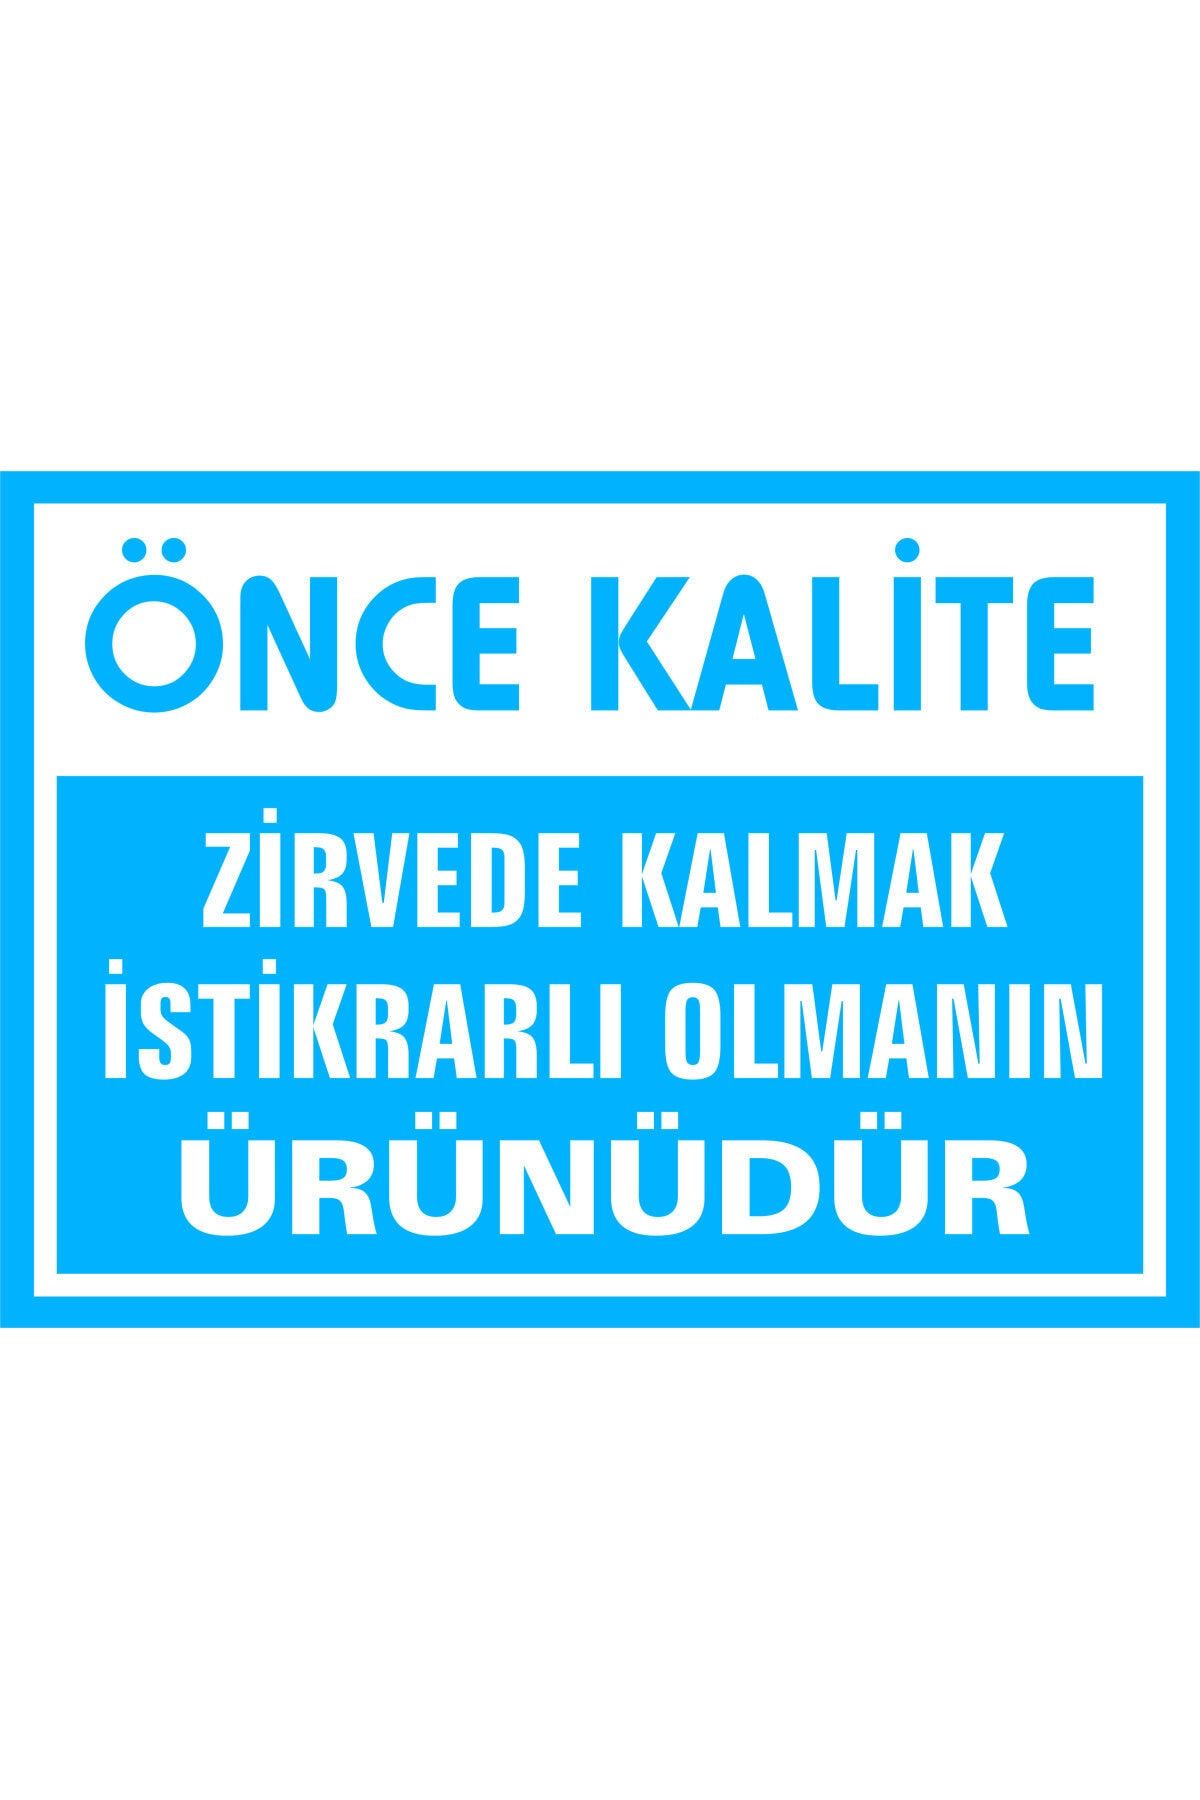 İzmir Serigrafi Önce Kalite Zirvede Kalmak Istikrarlı Olmanın Ürünüdür Kendinden Yapışkanlı Etiket 35 X 50 Cm